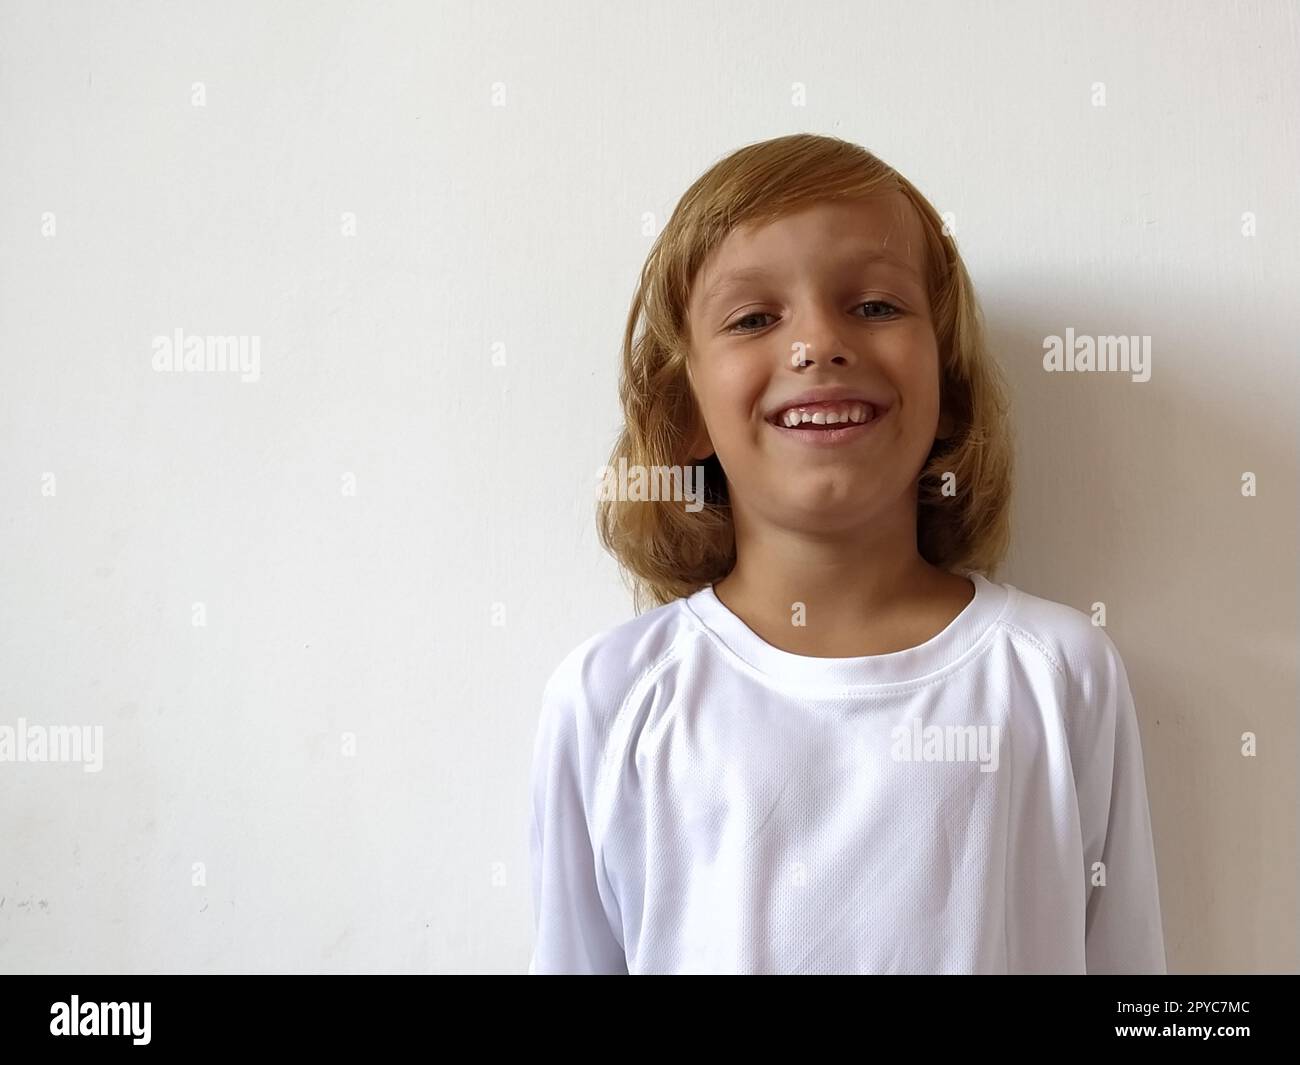 Ein kleines hübsches Mädchen im Alter von 6-7 Jahren mit hellem Haar drückt emotionale Freude und ein Lächeln auf weißem Hintergrund aus. Ein Kind mit gebräunter Haut. Weißes T-Shirt. Speicherplatz kopieren Stockfoto